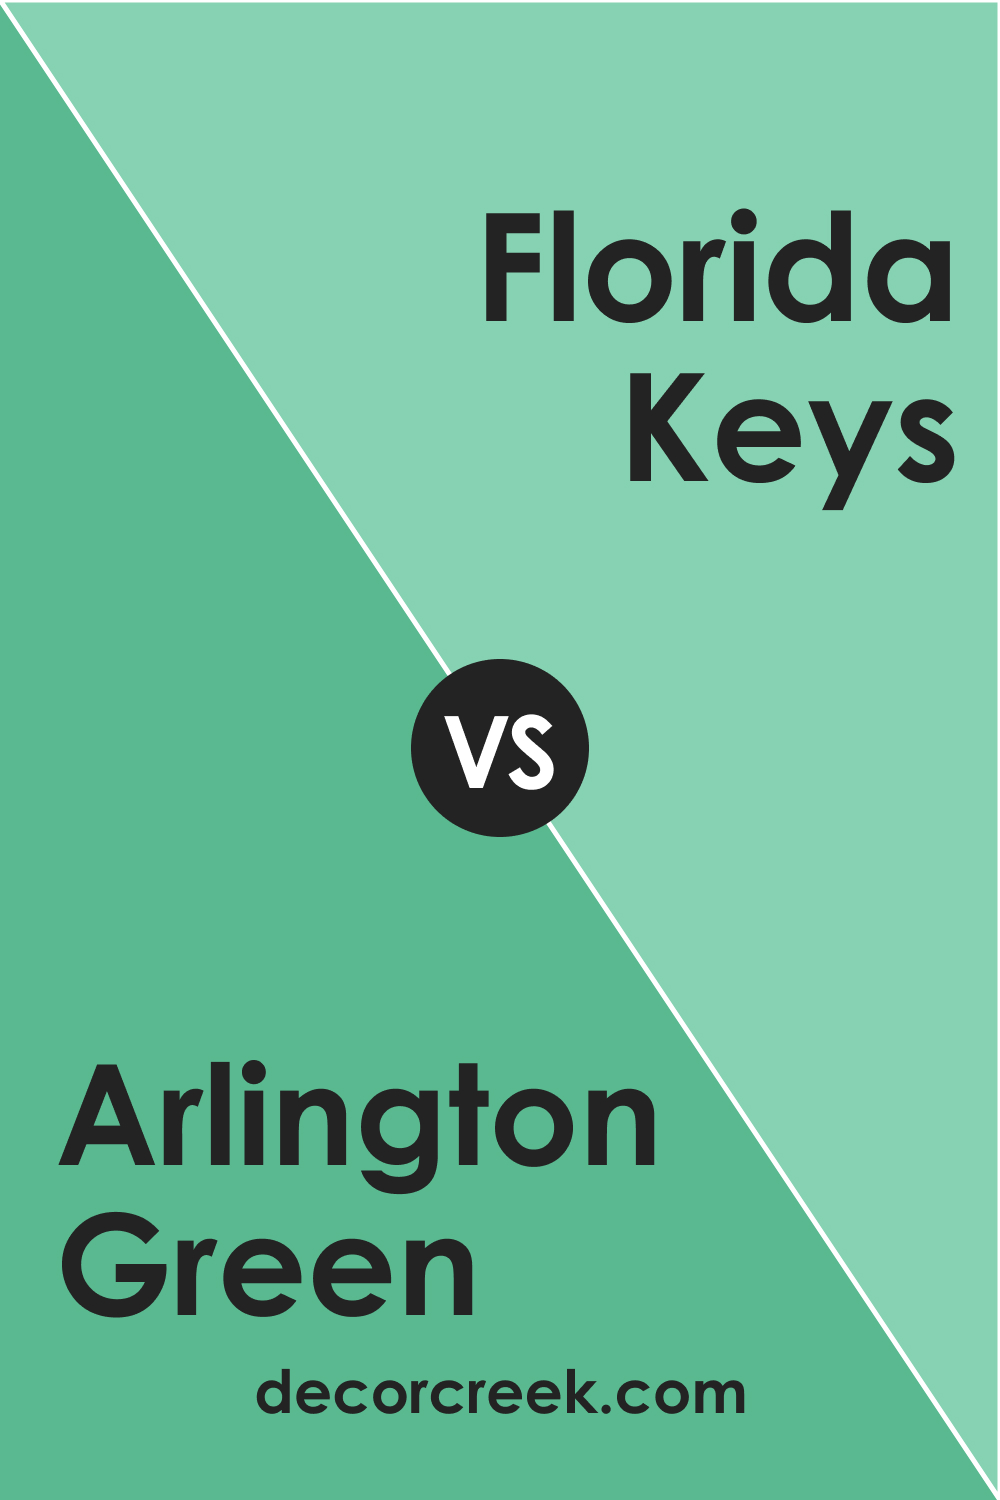 Arlington Green 580 vs. BM 578 Florida Keys